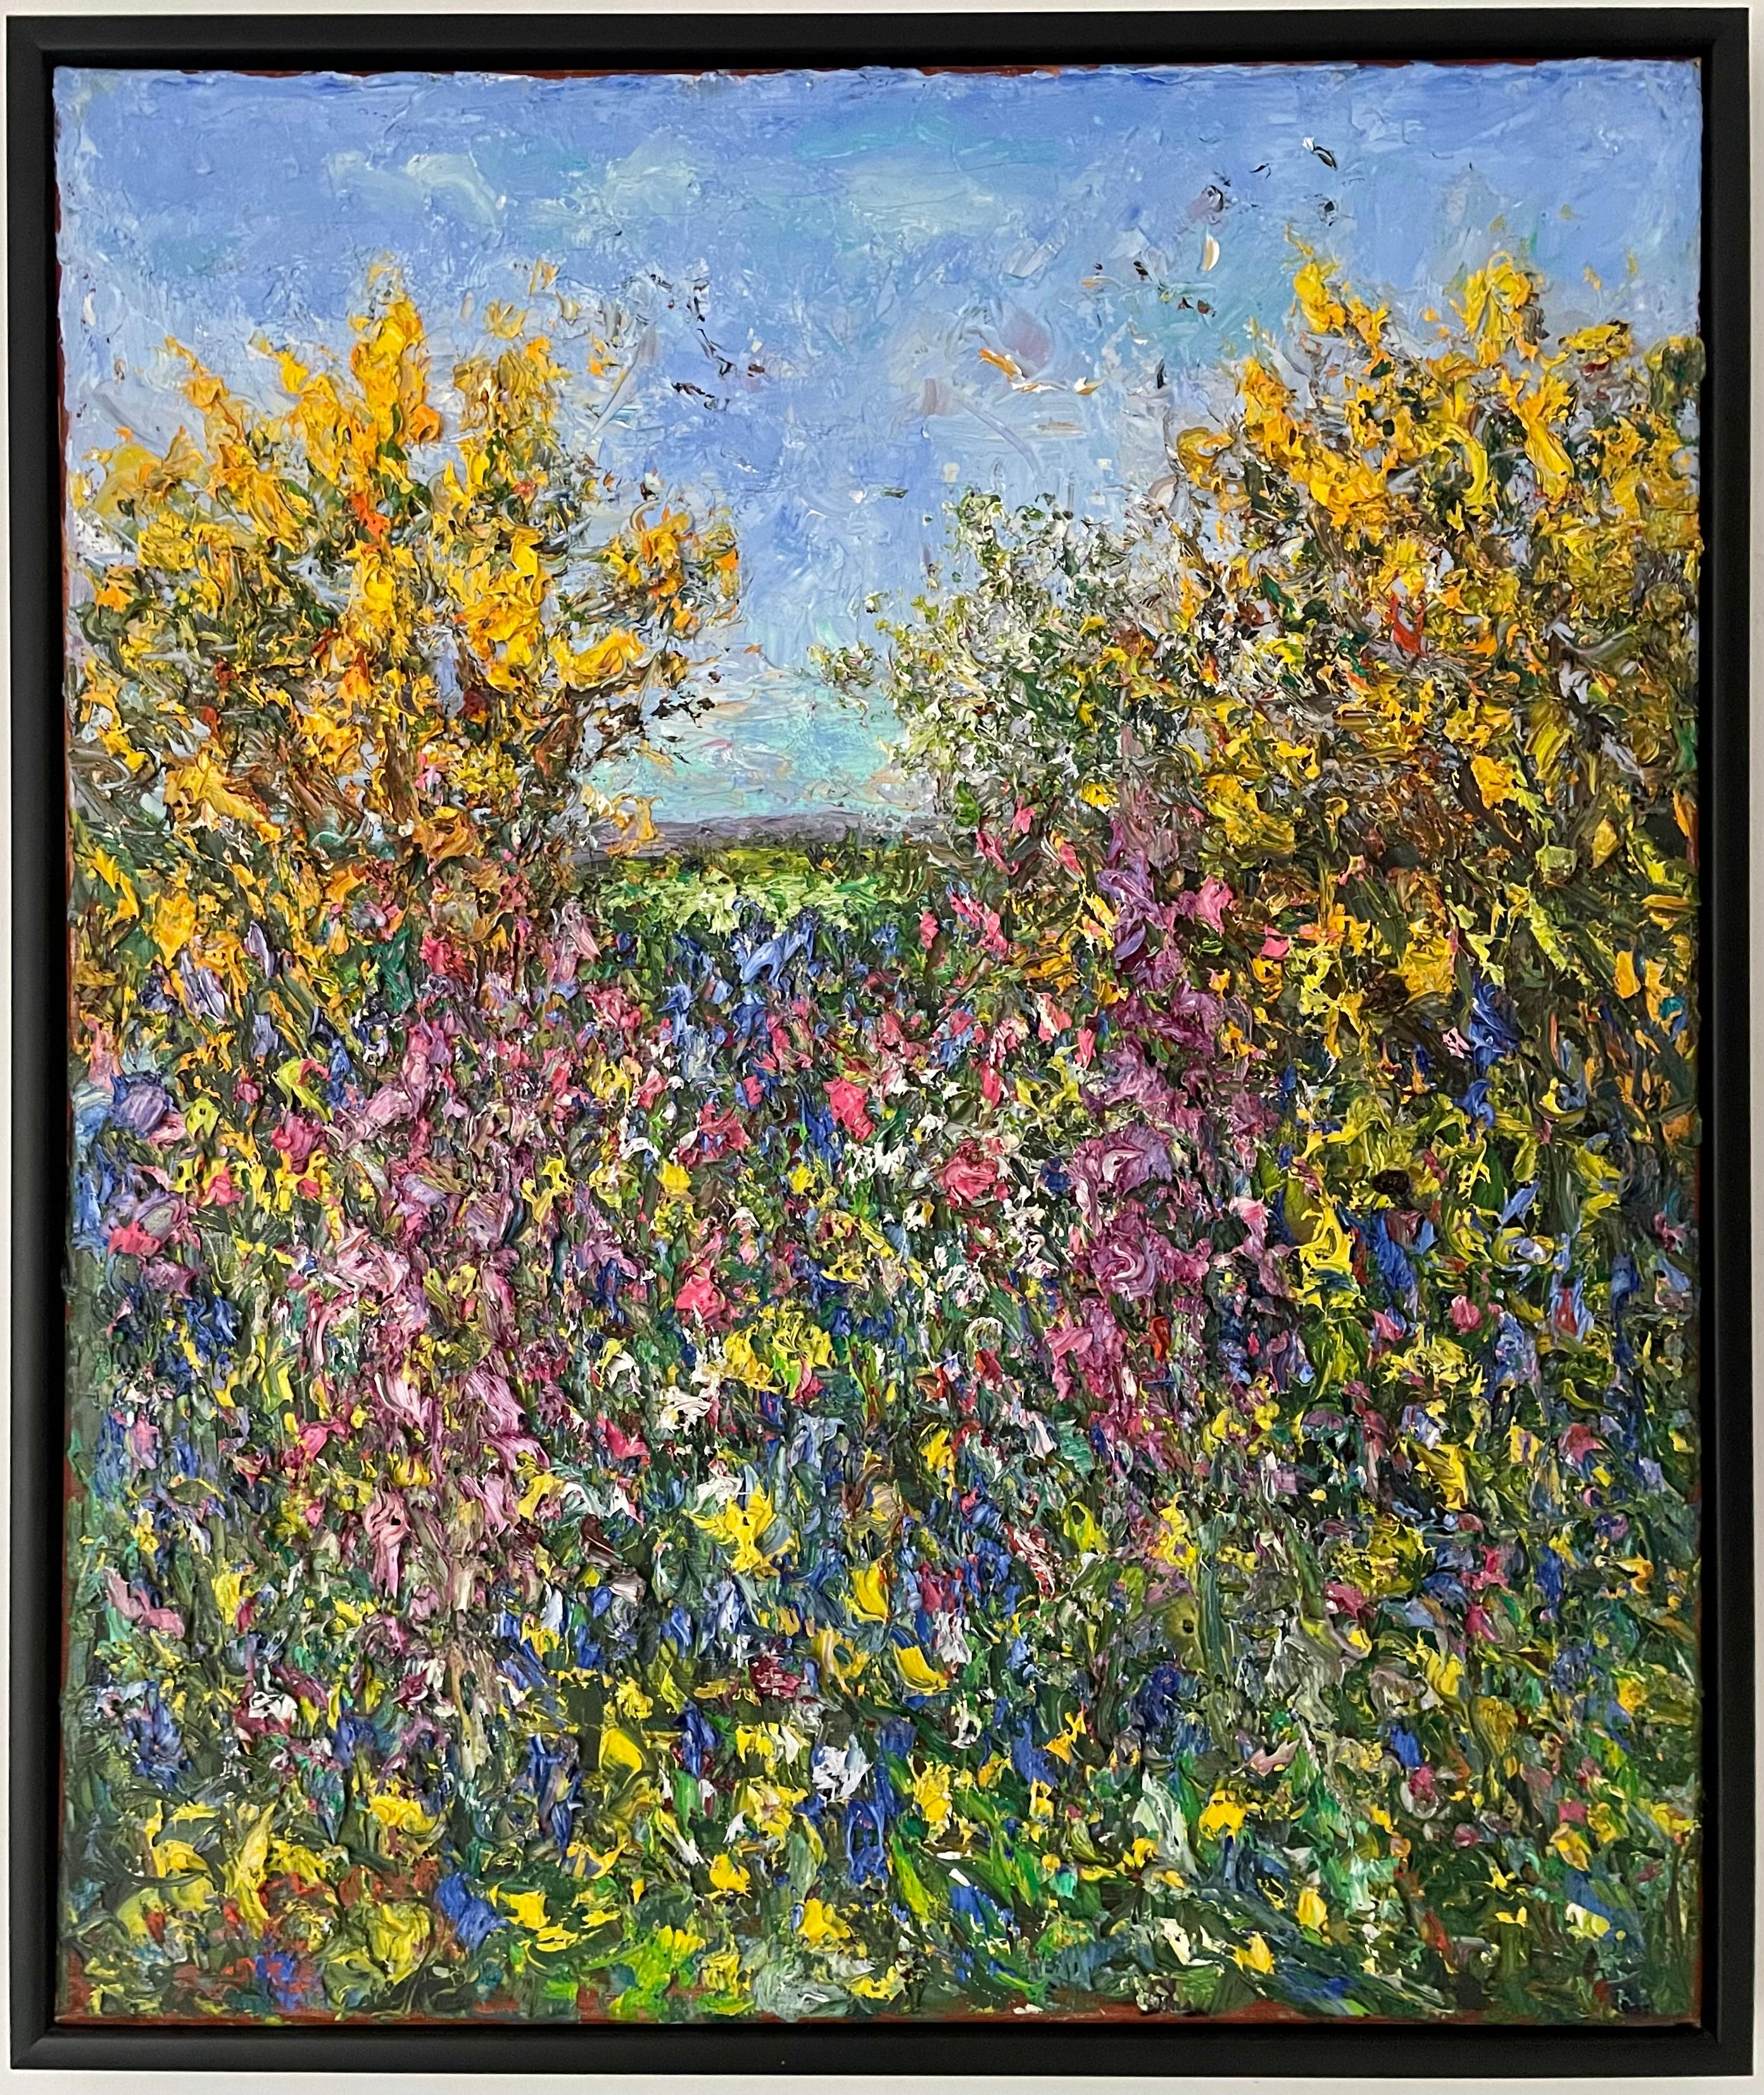 Landscape Painting Michael Strang - Haie de Cornish, fin du printemps.  Peinture à l'huile - paysage contemporain